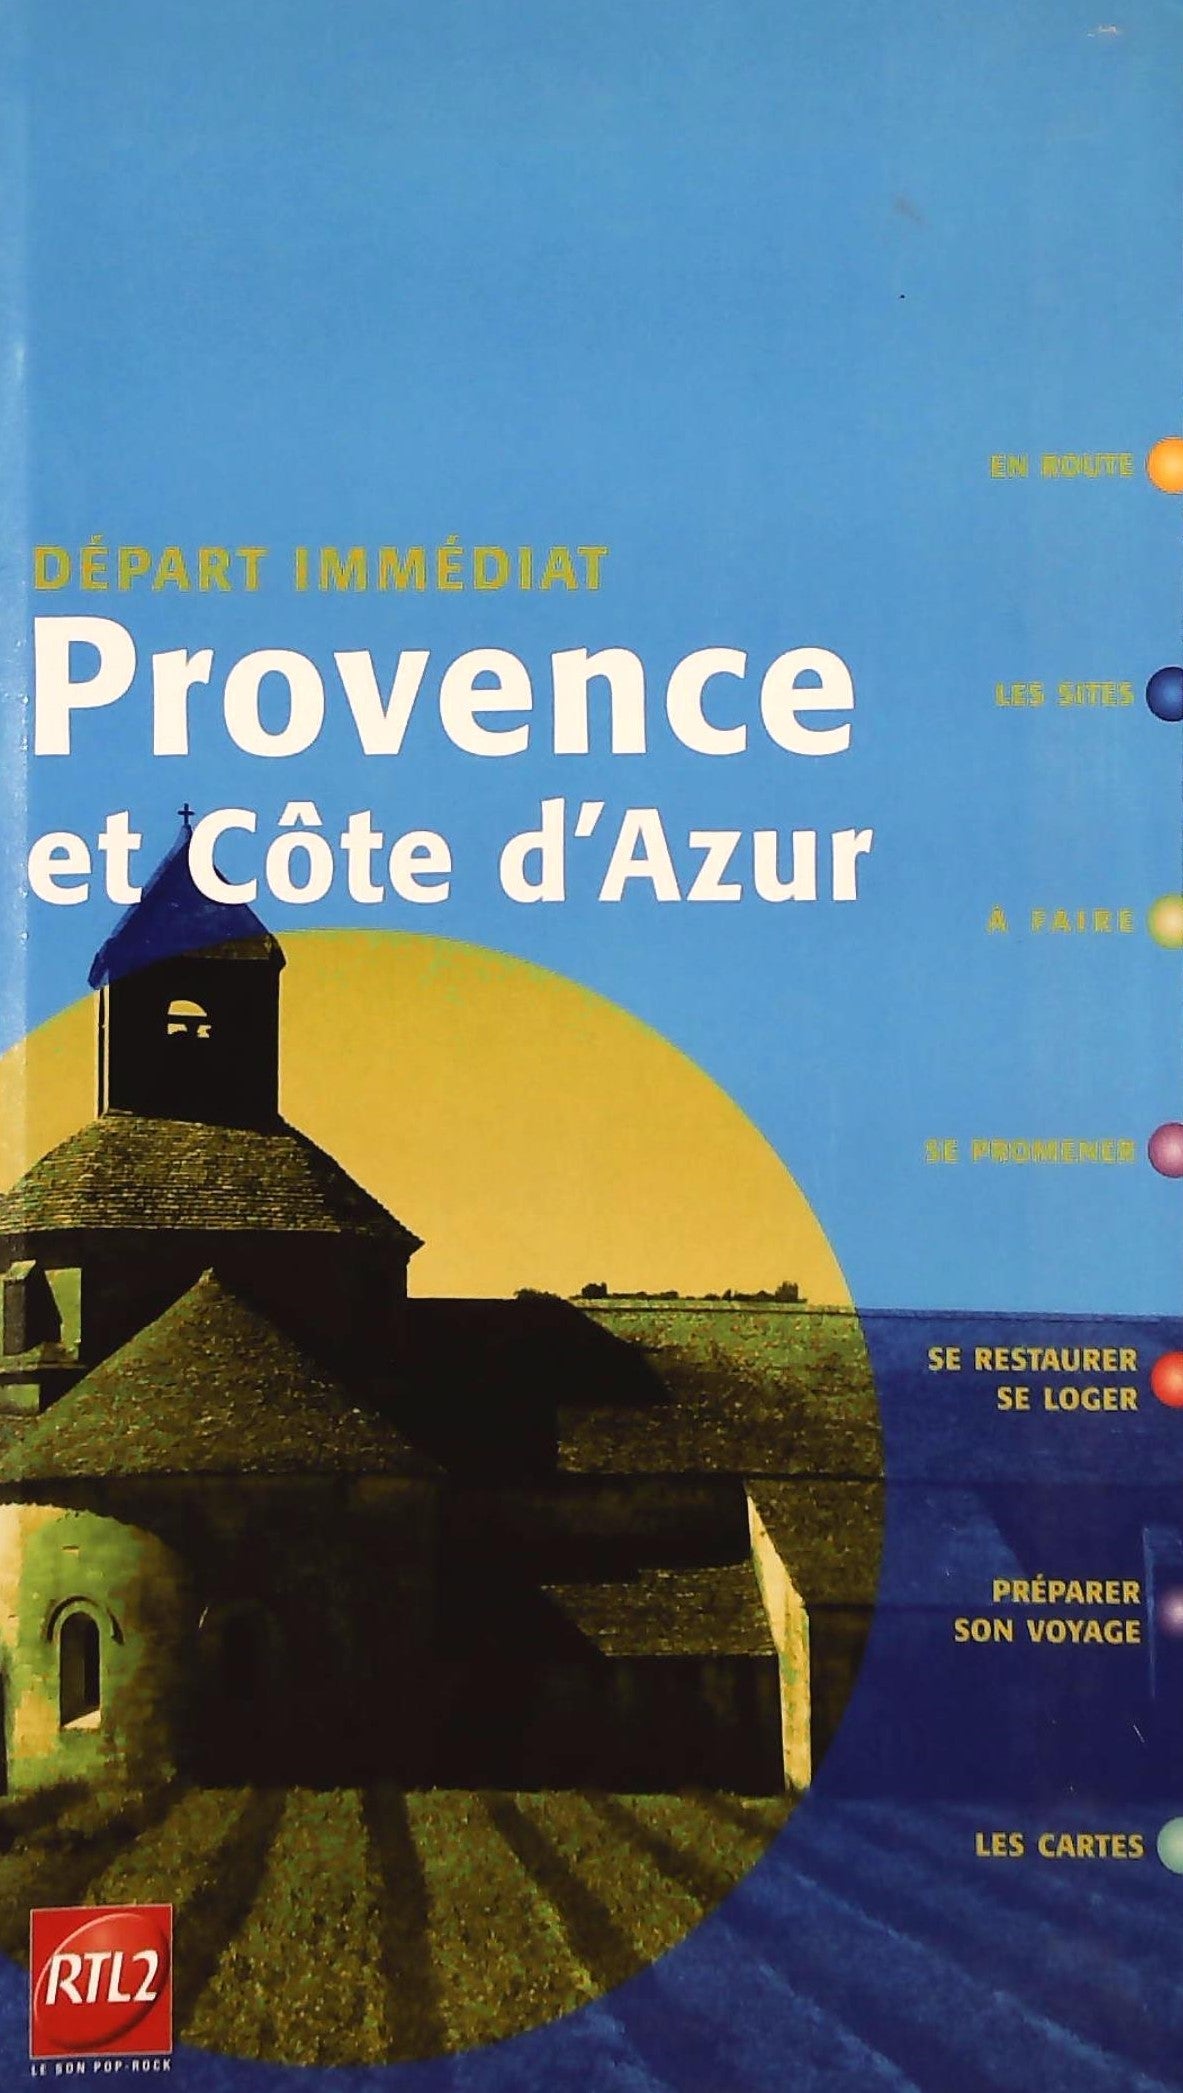 Livre ISBN 2352190010 Départ immédiat : Provence et Côte d'Azur